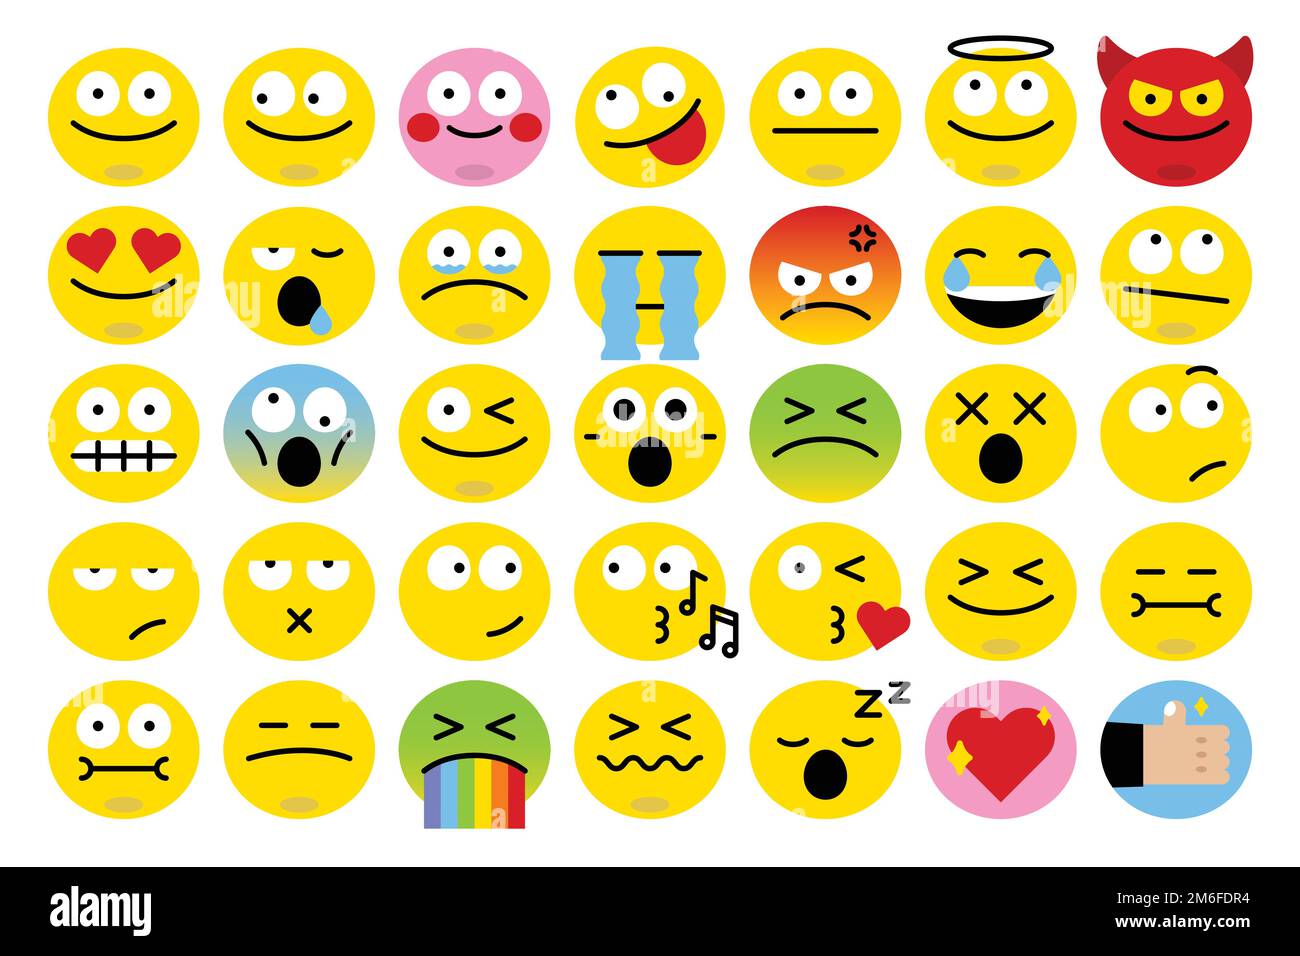 Emoticon facial expression collection vector Stock Vector